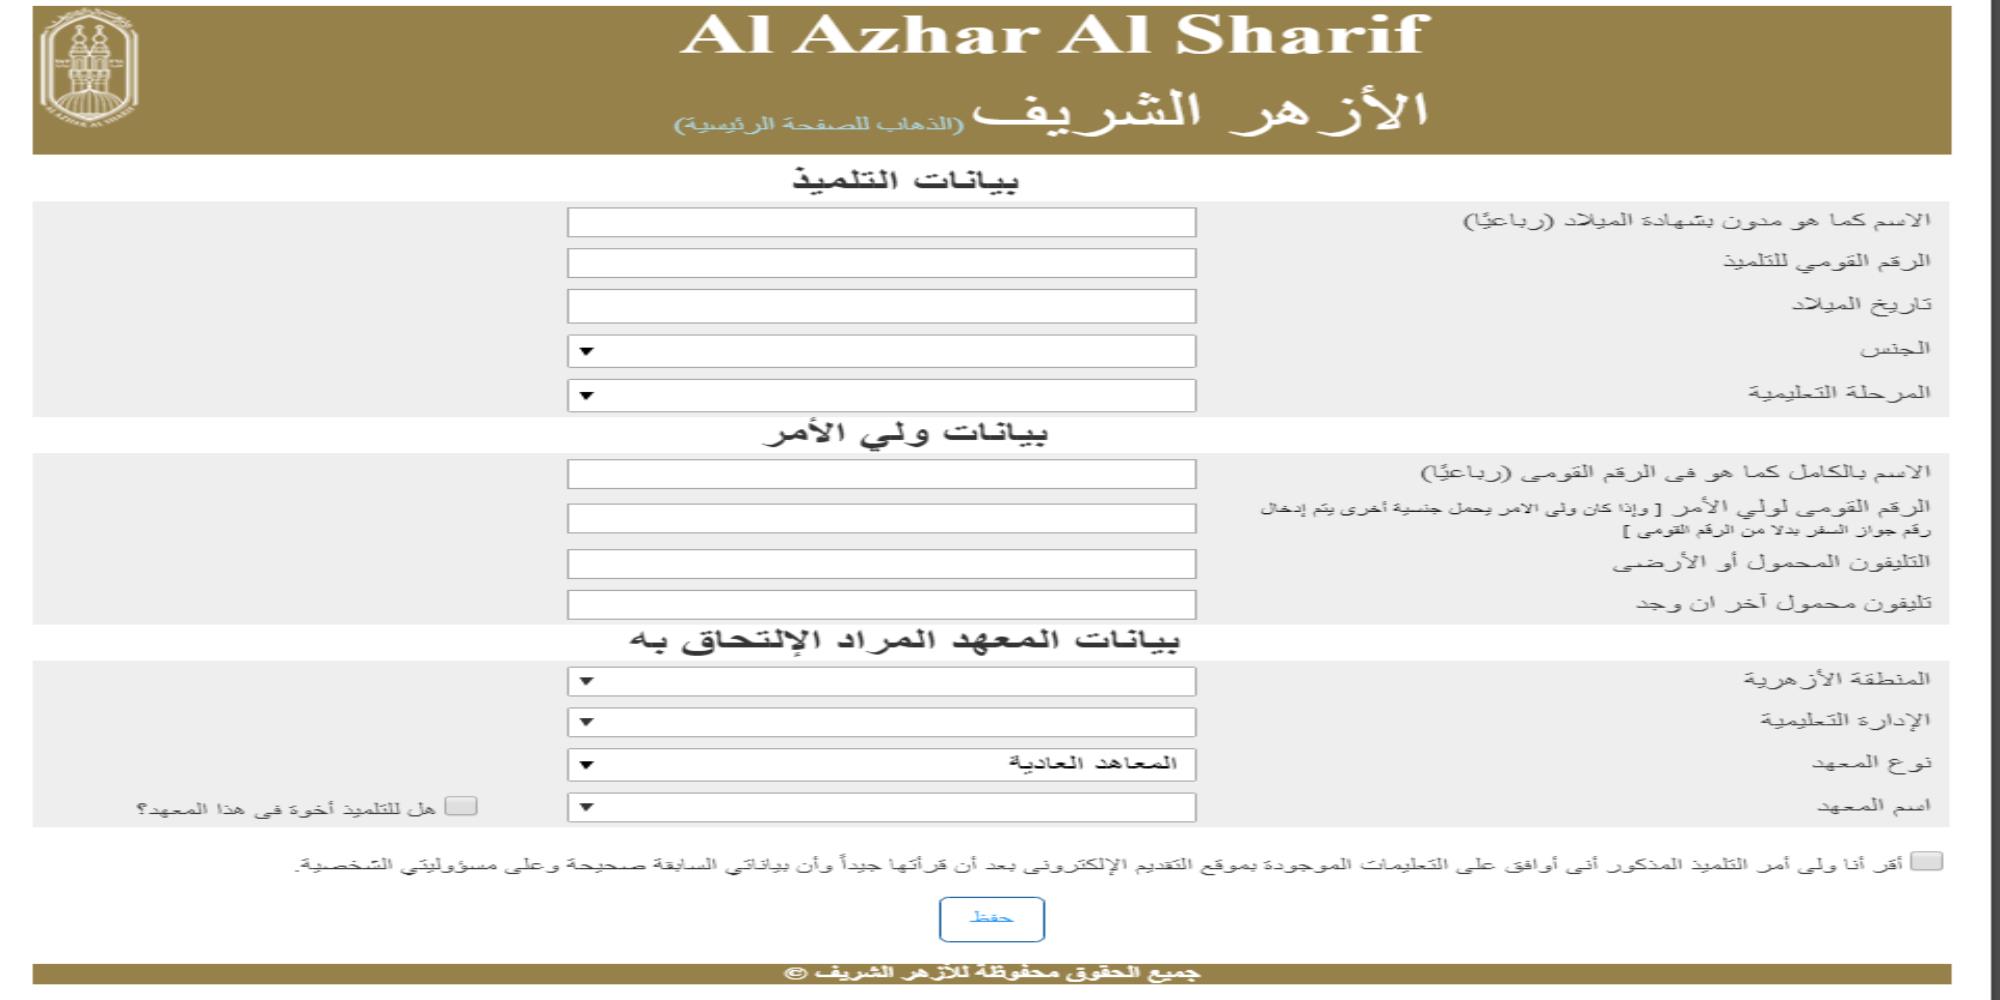 رابط التسجيل في بوابة الأزهر الإلكترونية للصف الاول الابتدائي 2022 عبر azhar.gov.eg